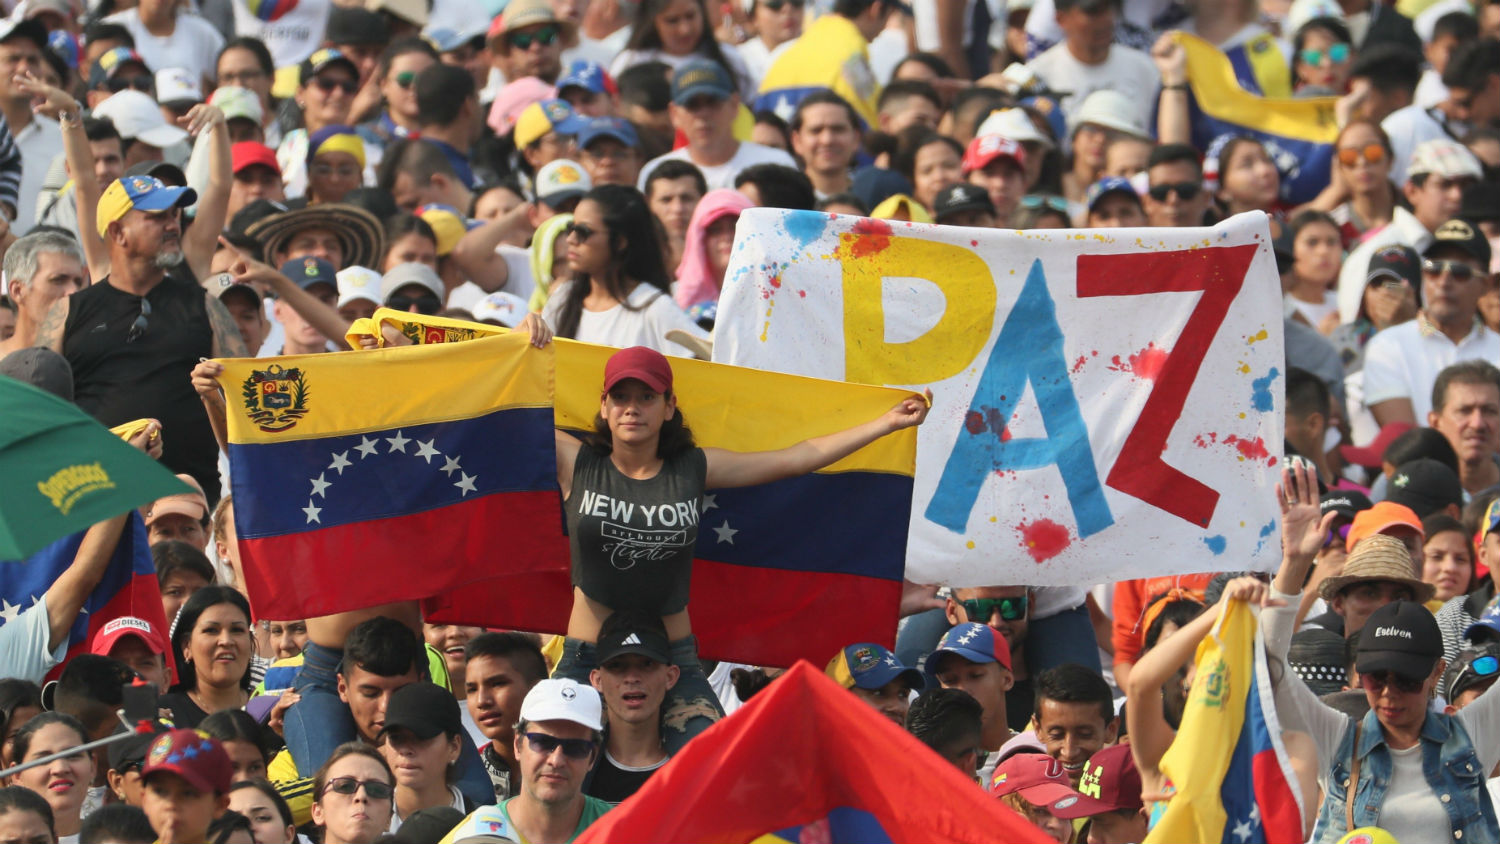 VenezuelaAidLive acaparó la atención del mundo antes de la entrada de la ayuda humanitaria